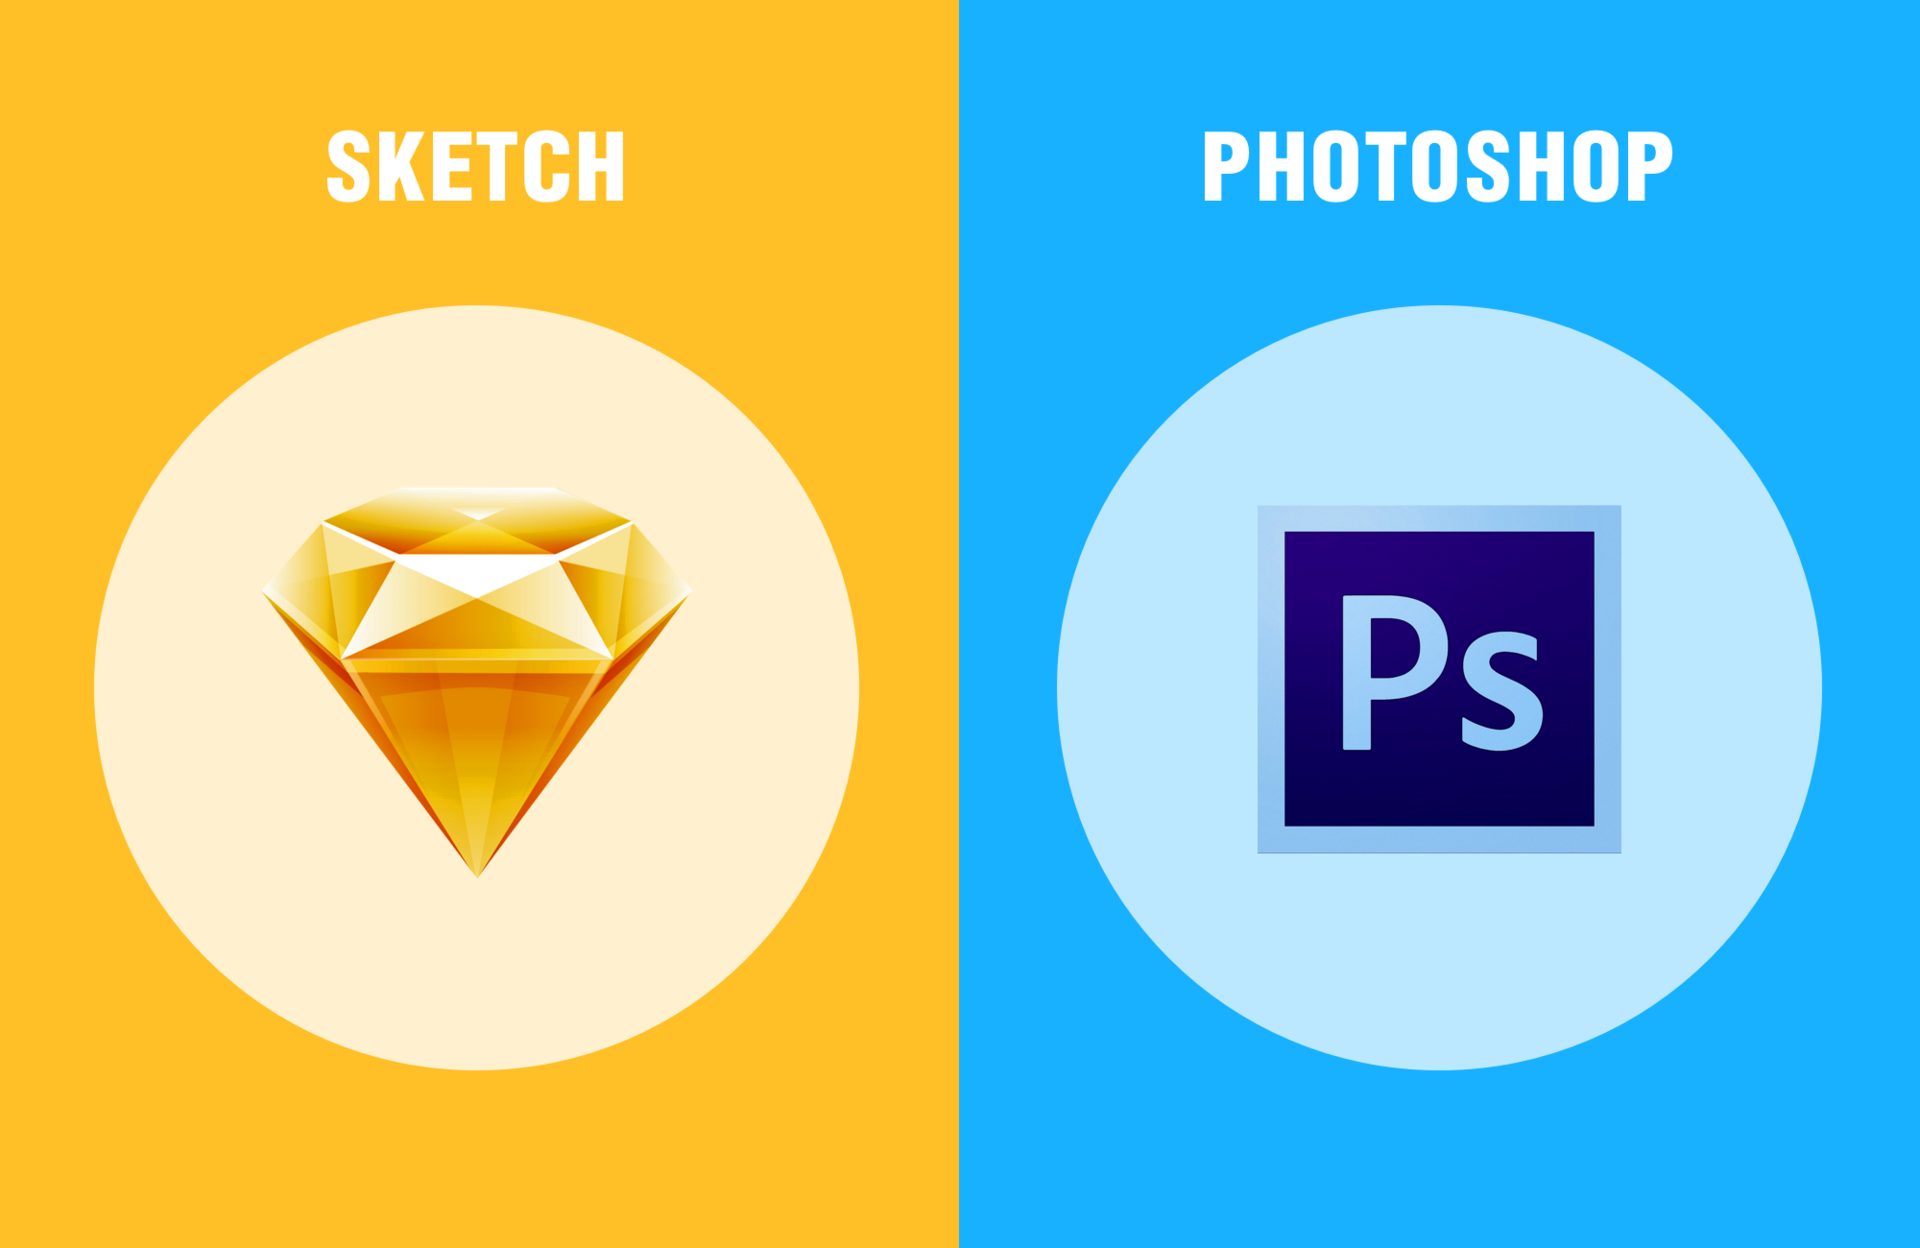 Photoshop, Sketch инструментарий UI-UX-дизайнеров: что выбрать для разработки интерфейсов? - 1